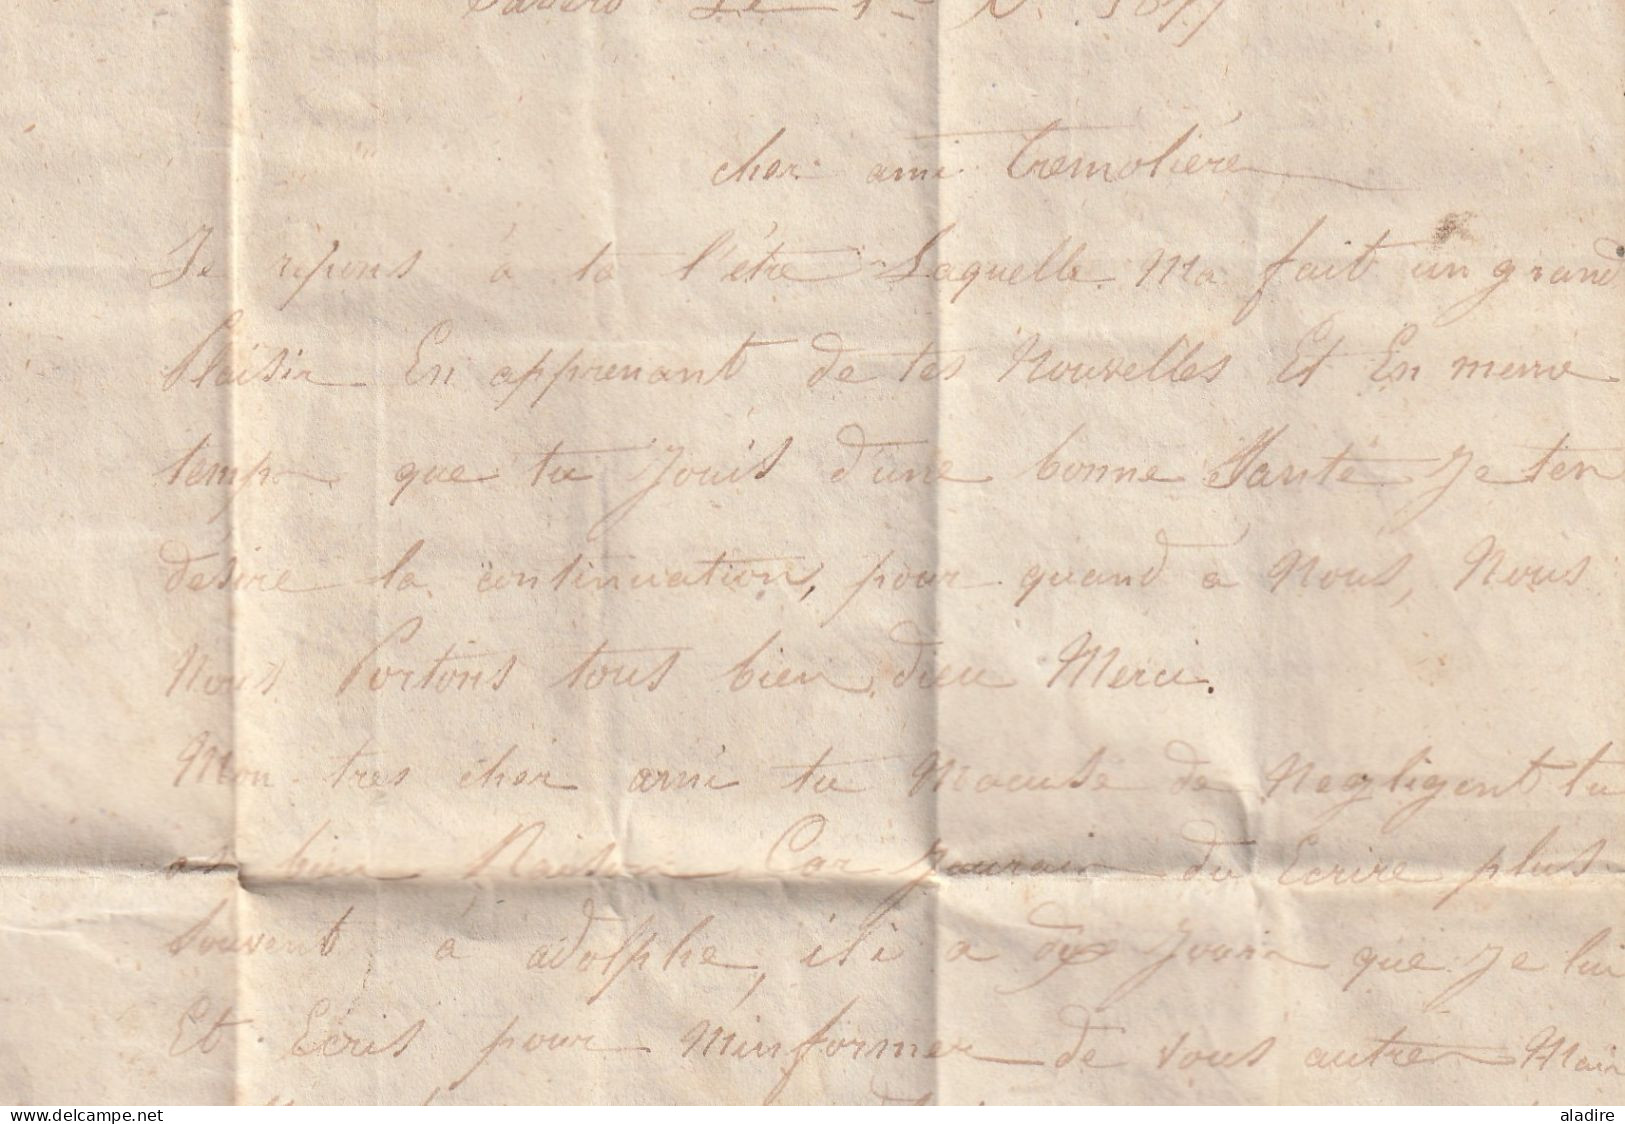 1847 - Lettre amicale de 3 pages serrées de SABERO, Leon vers COLY par MONTPAN, Dordogne, France